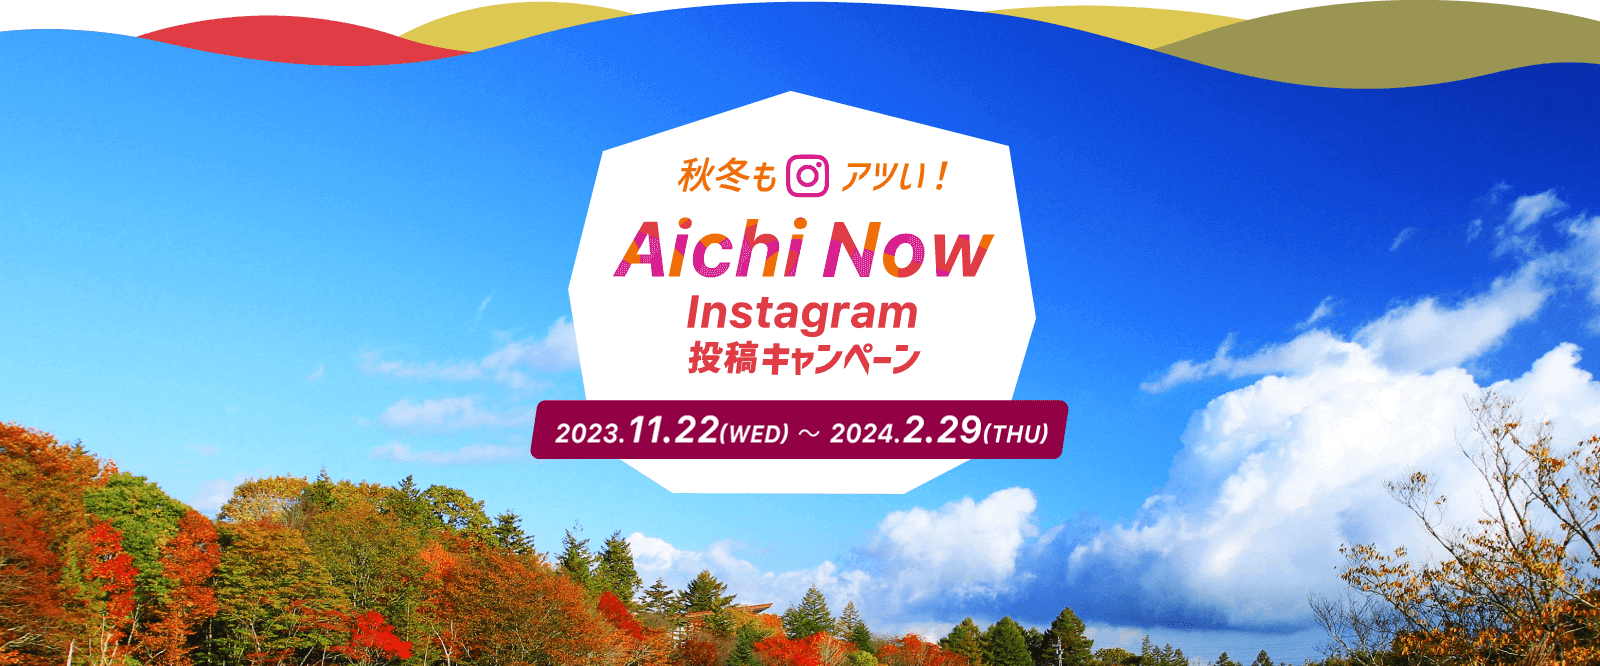 秋冬もアツい! #aichinow Instagram 投稿キャンペーン